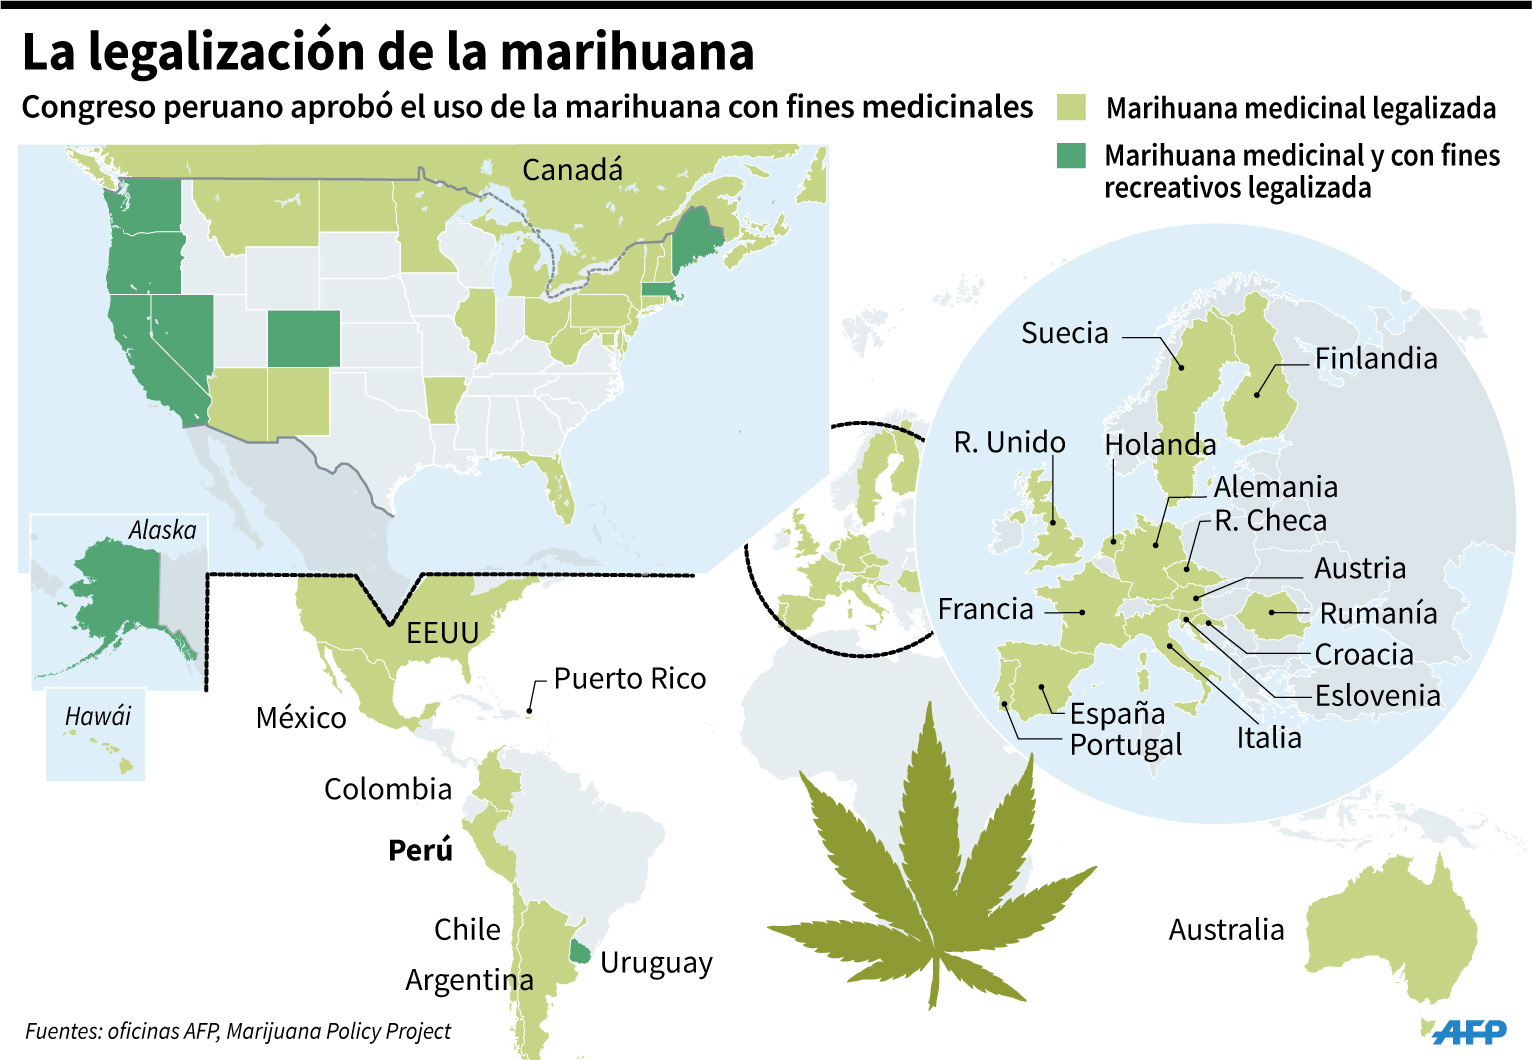 Congreso de Perú aprueba el uso medicinal de la marihuana